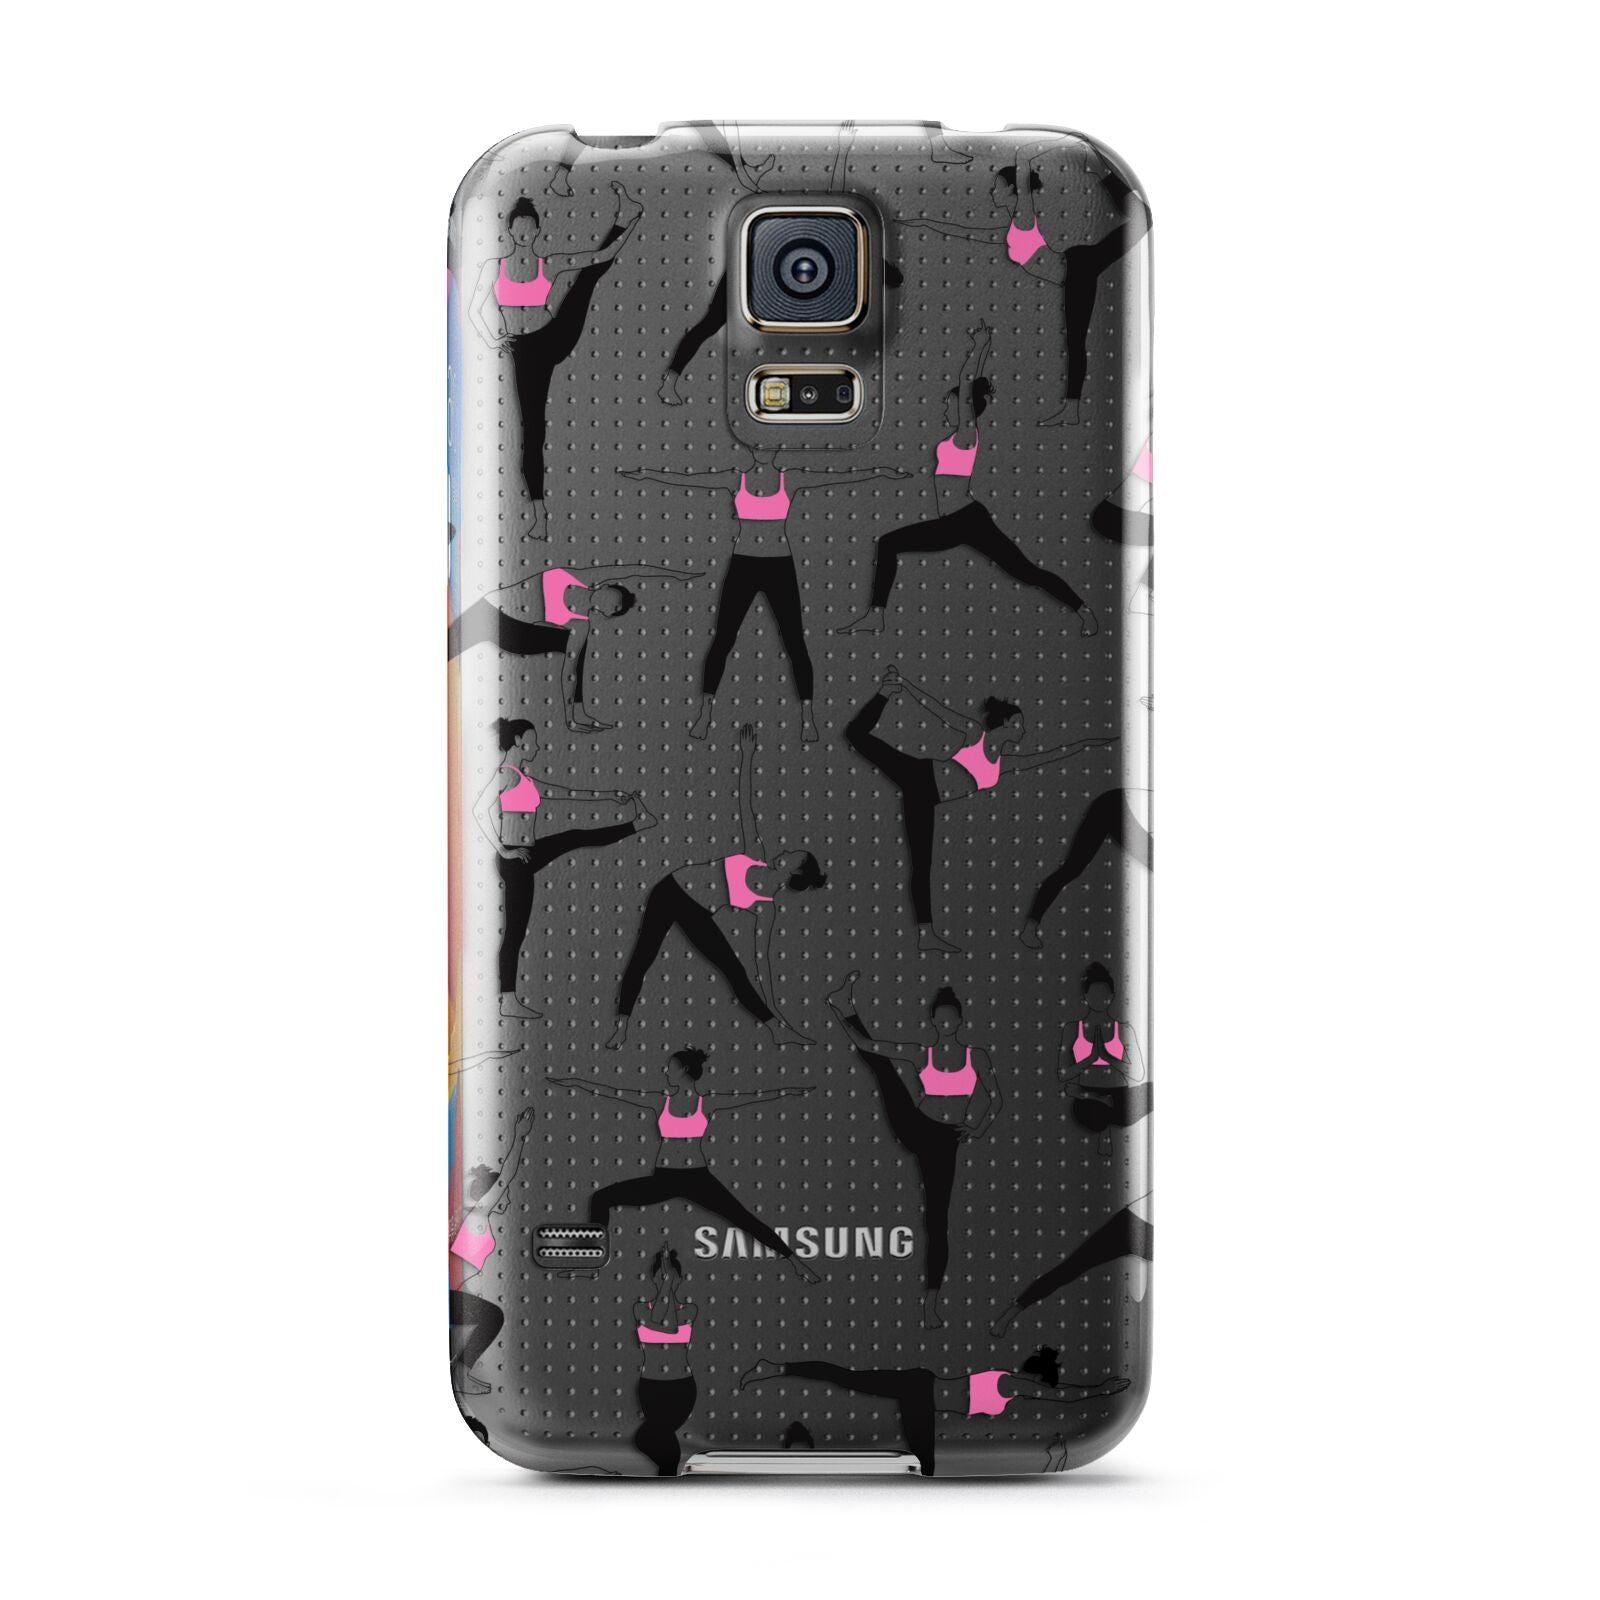 Yoga Samsung Galaxy S5 Case